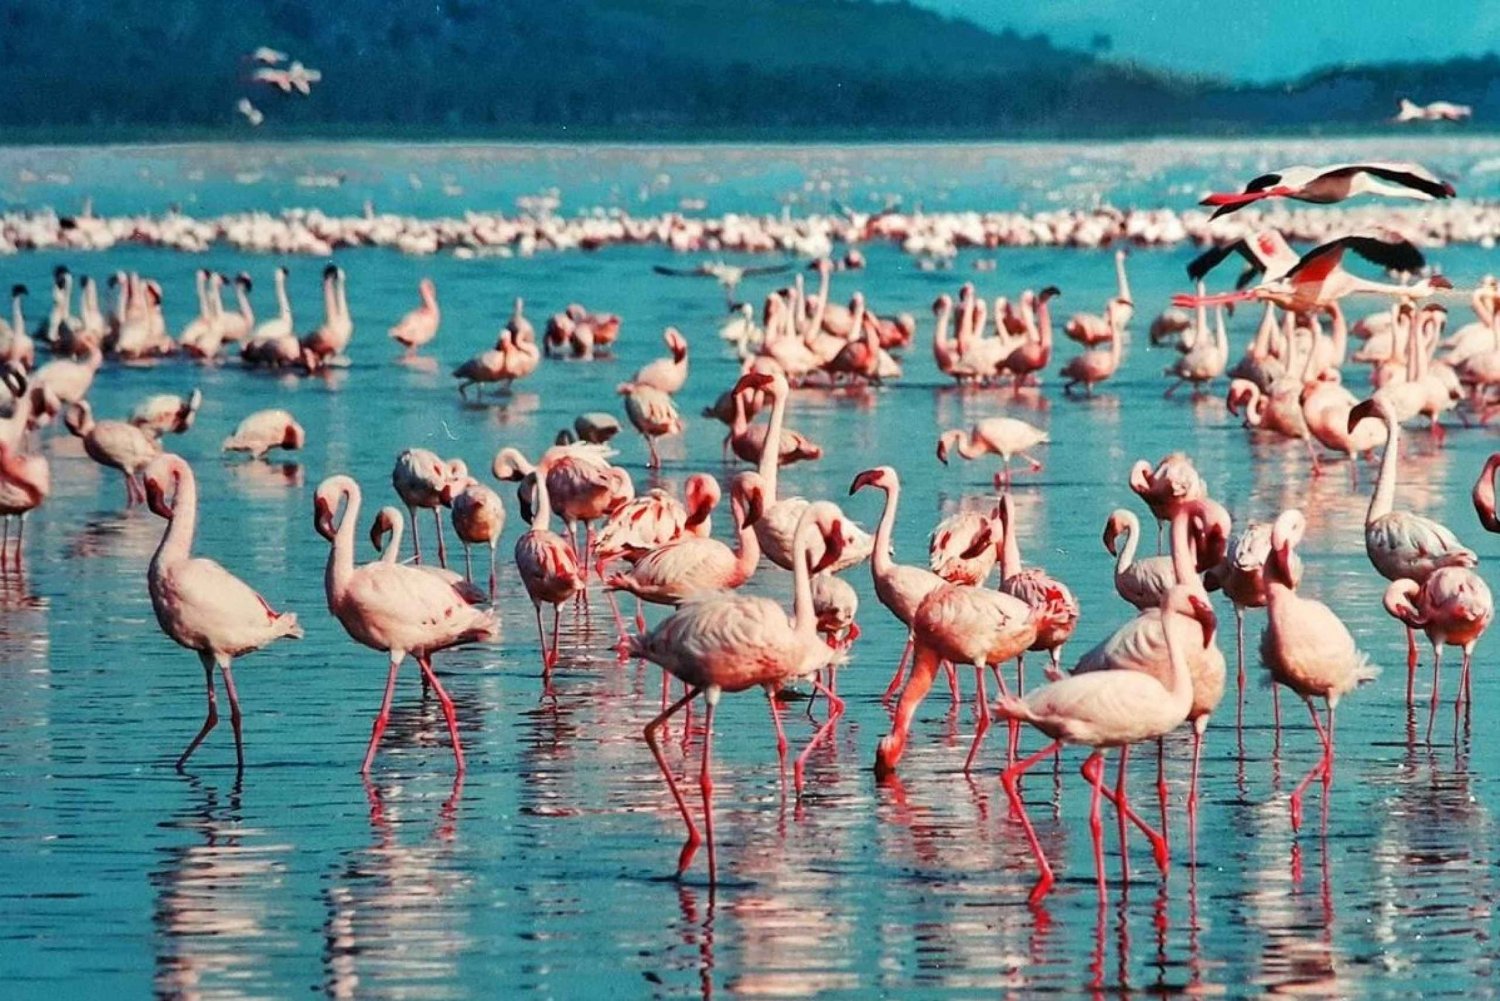 2-dagers flamingosafari ved Nakurusjøen og båttur på Naivashasjøen